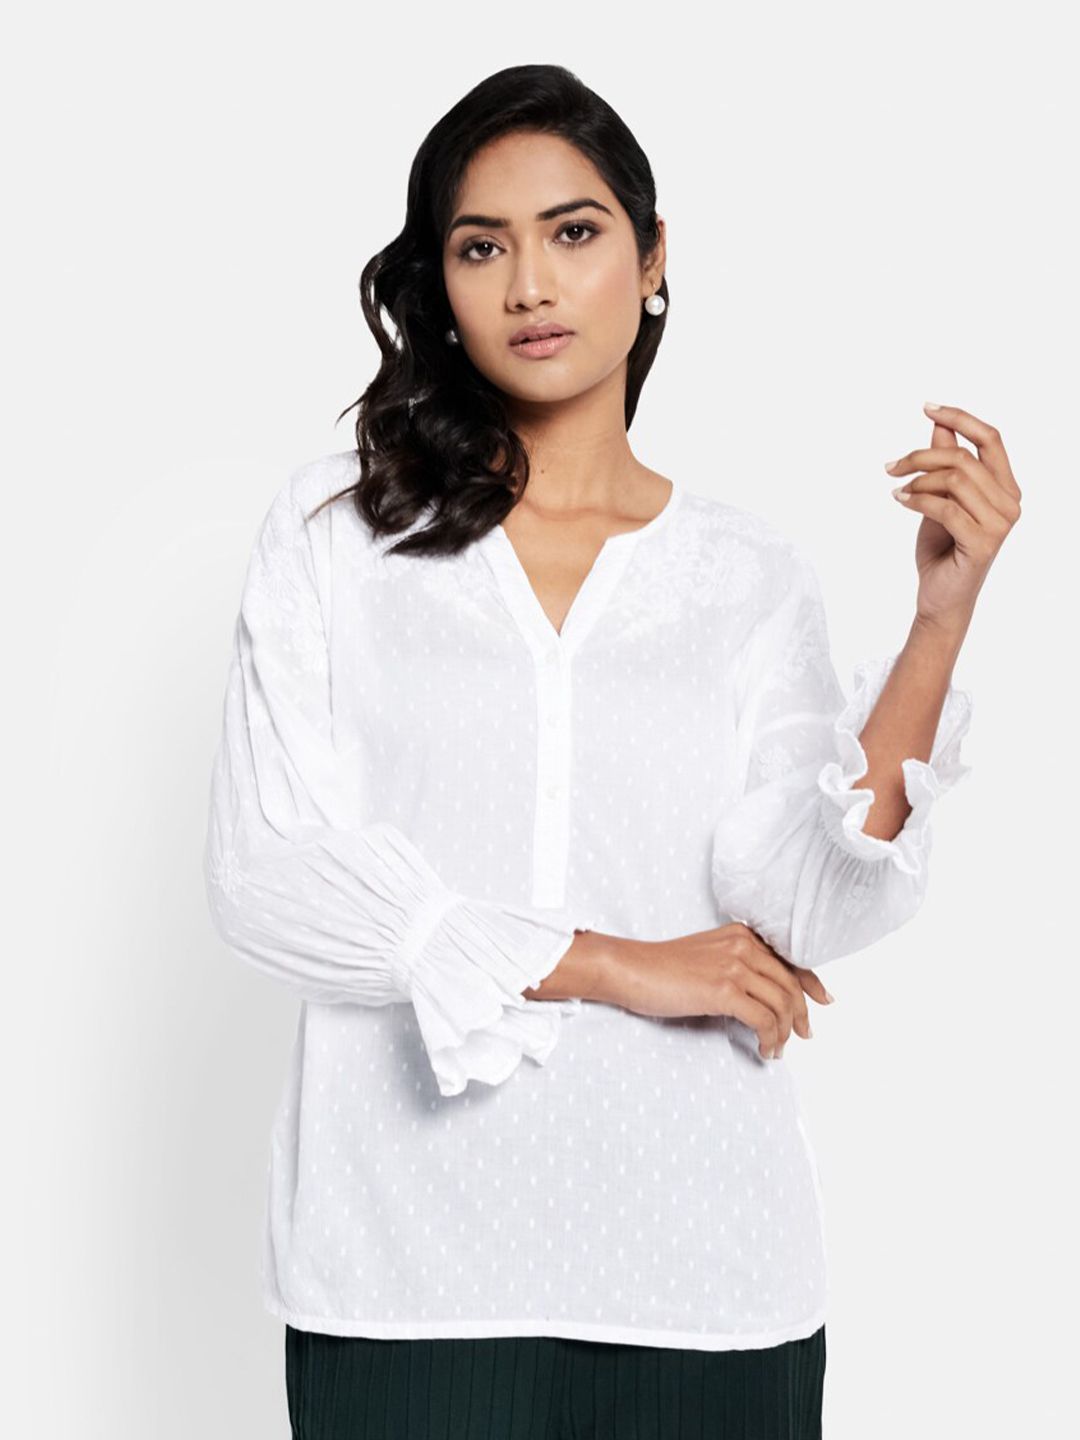 Fabindia White Chikankari Pure Cotton Shirt Style Top Price in India